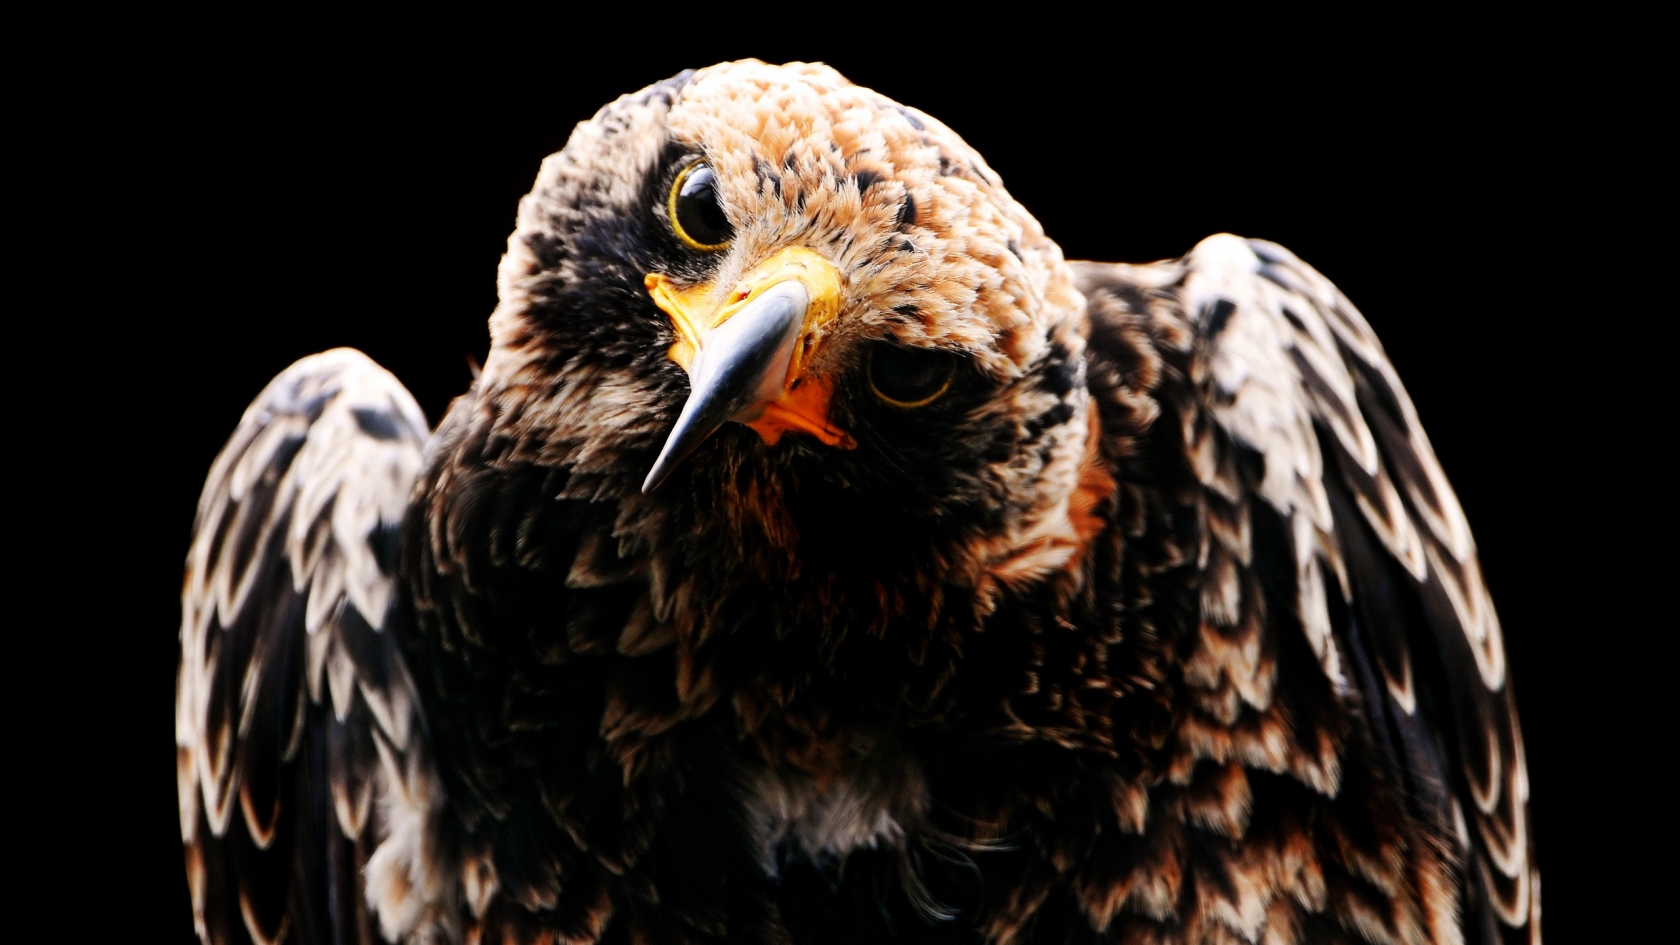 Black Owl for 1680 x 945 HDTV resolution